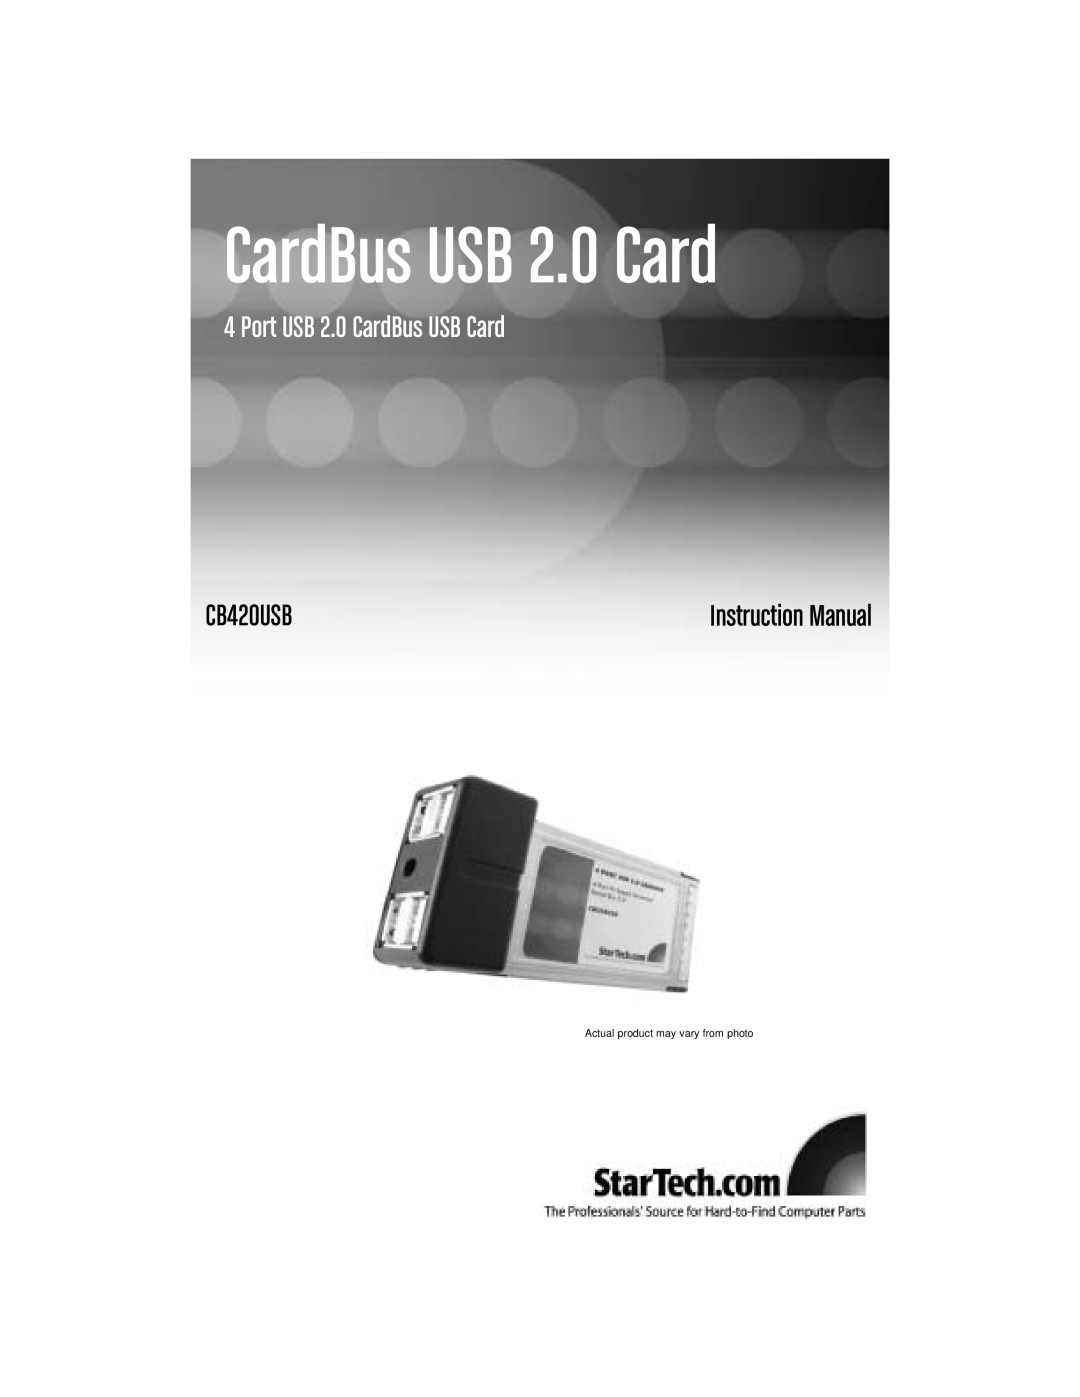 StarTech.com CB420USB instruction manual CardBus USB 2.0 Card, Port USB 2.0 CardBus USB Card, Instruction Manual 